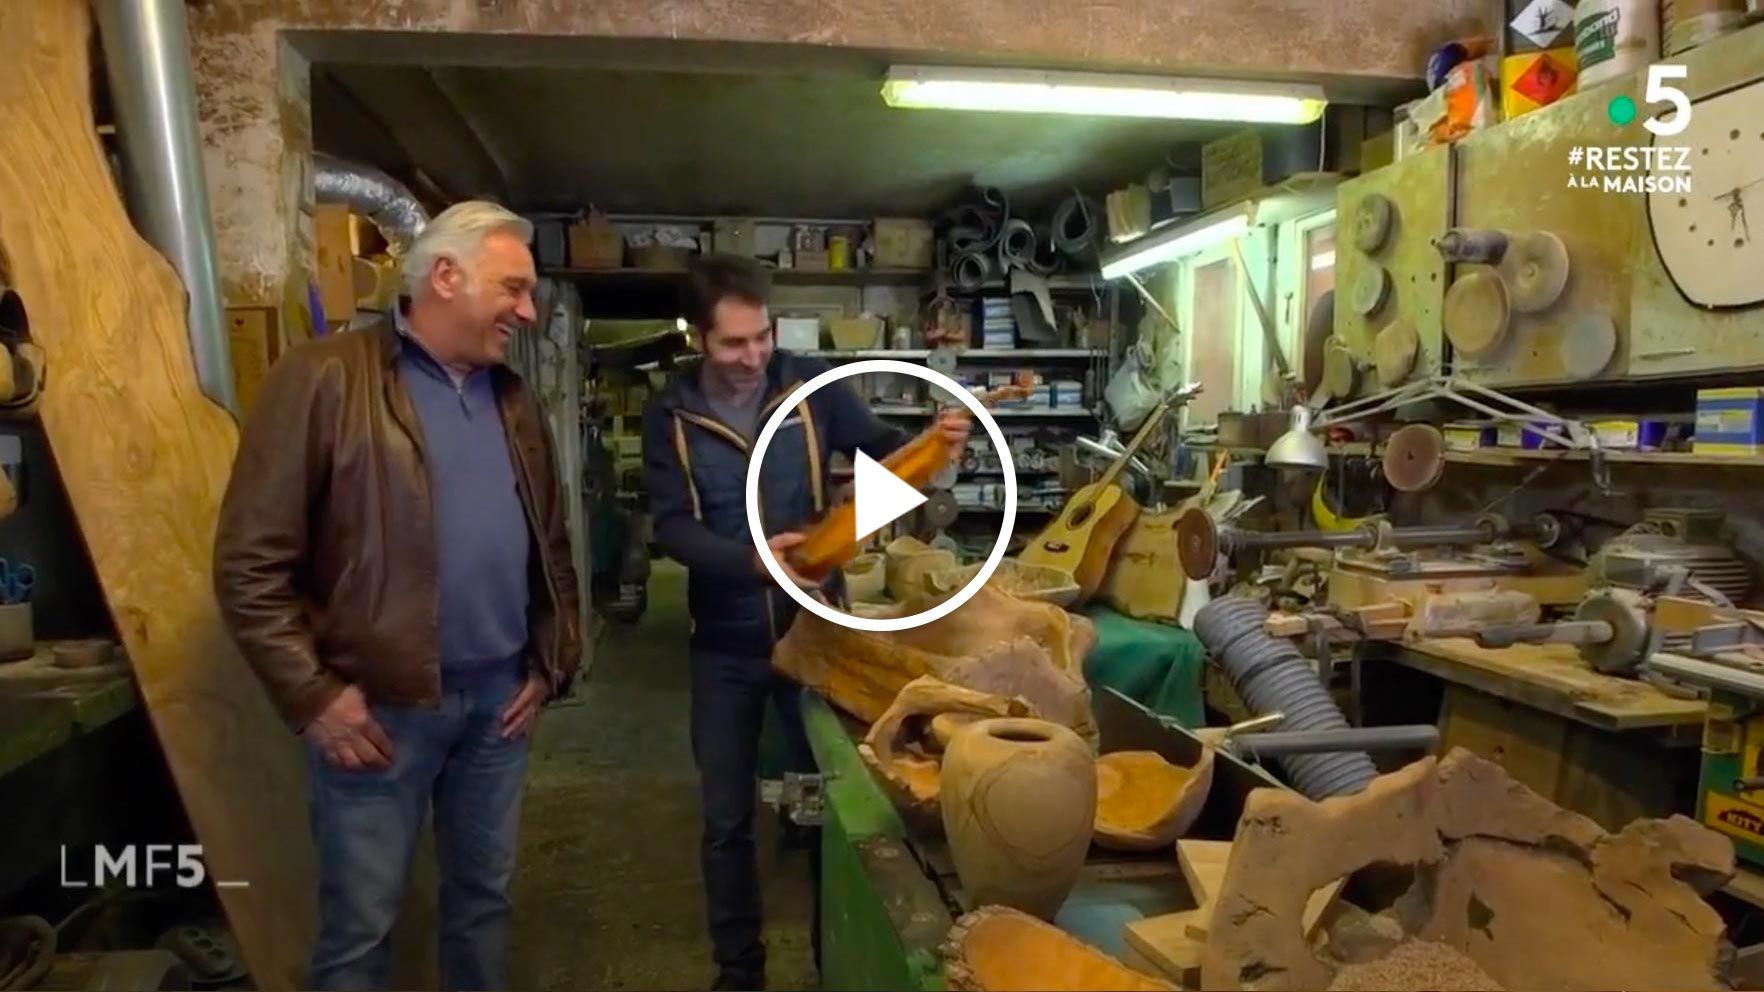 Aperçu de la vidéo passage télévisé du Travail du Bois d'olivier dans La Maison France 5